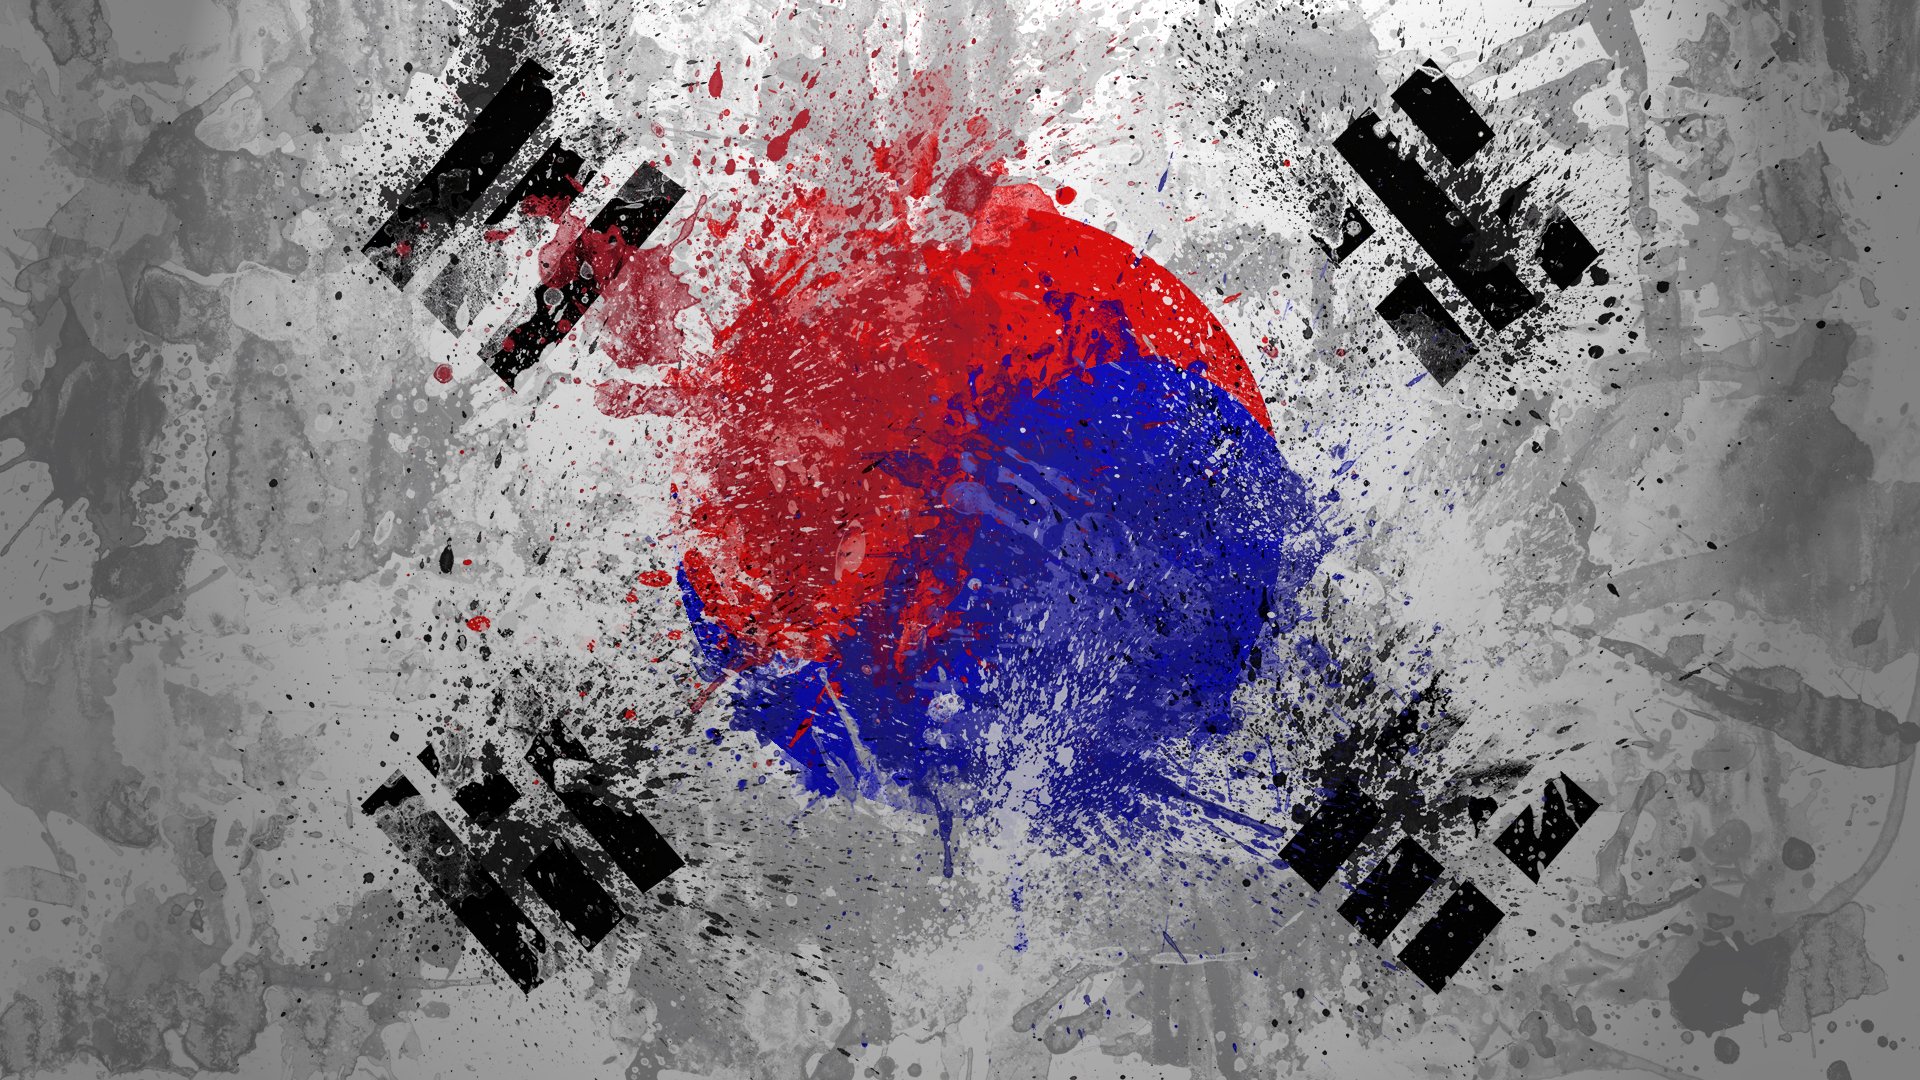 Флаг Южная Корея